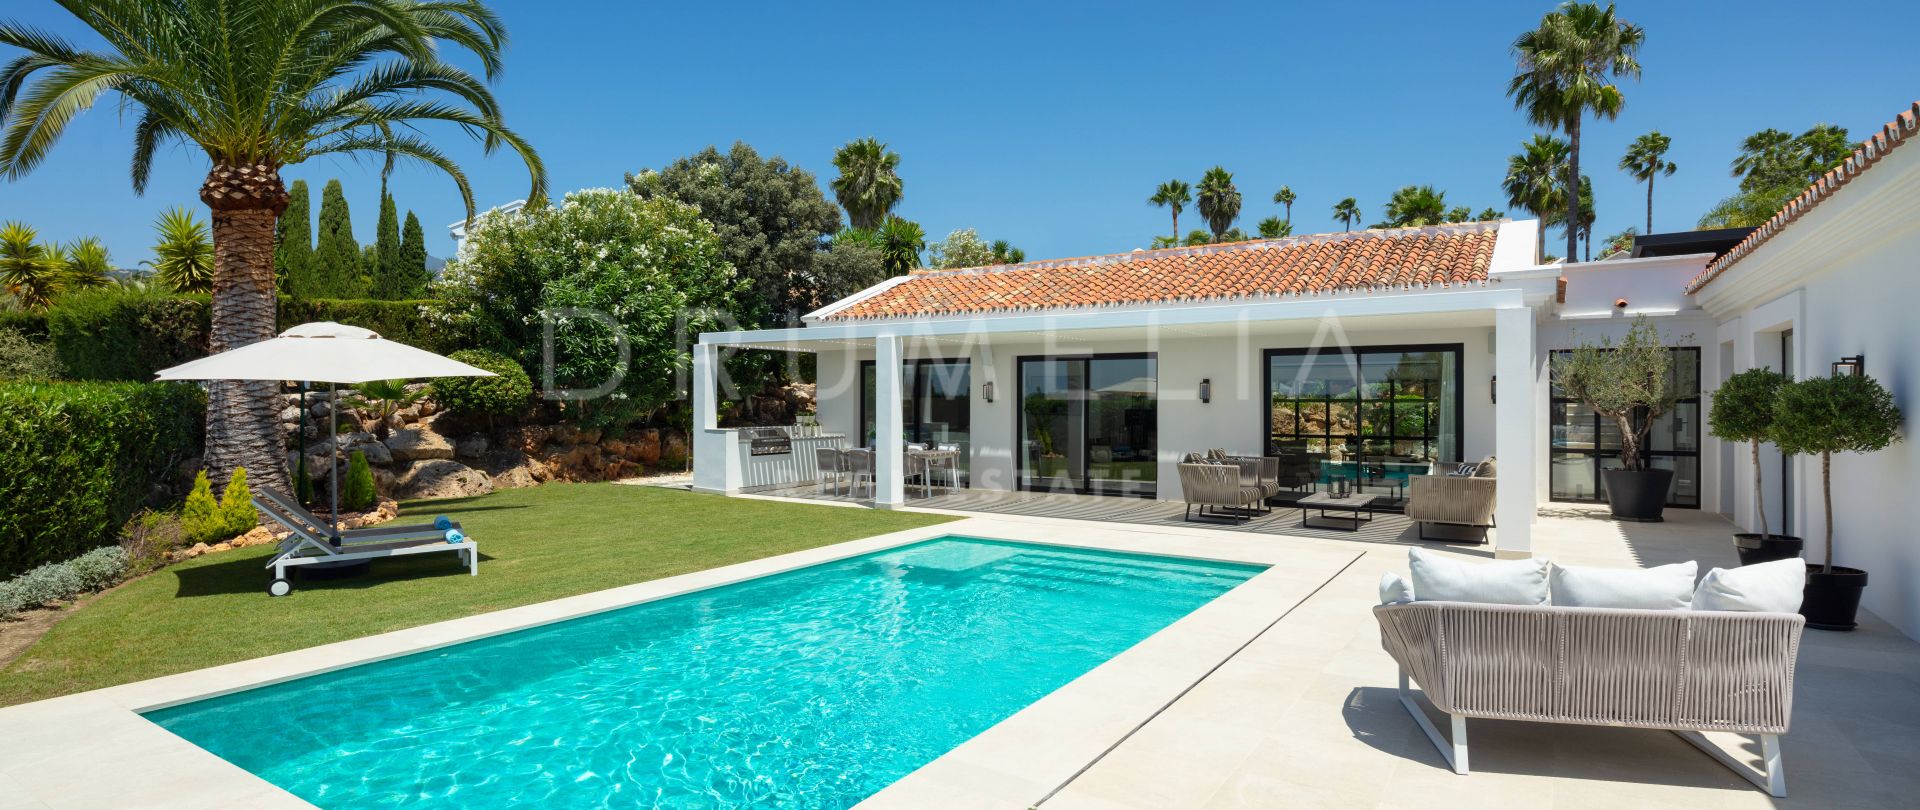 Encantadora villa andaluza con interior moderno, Los Naranjos Golf, Nueva Andalucía, Marbella